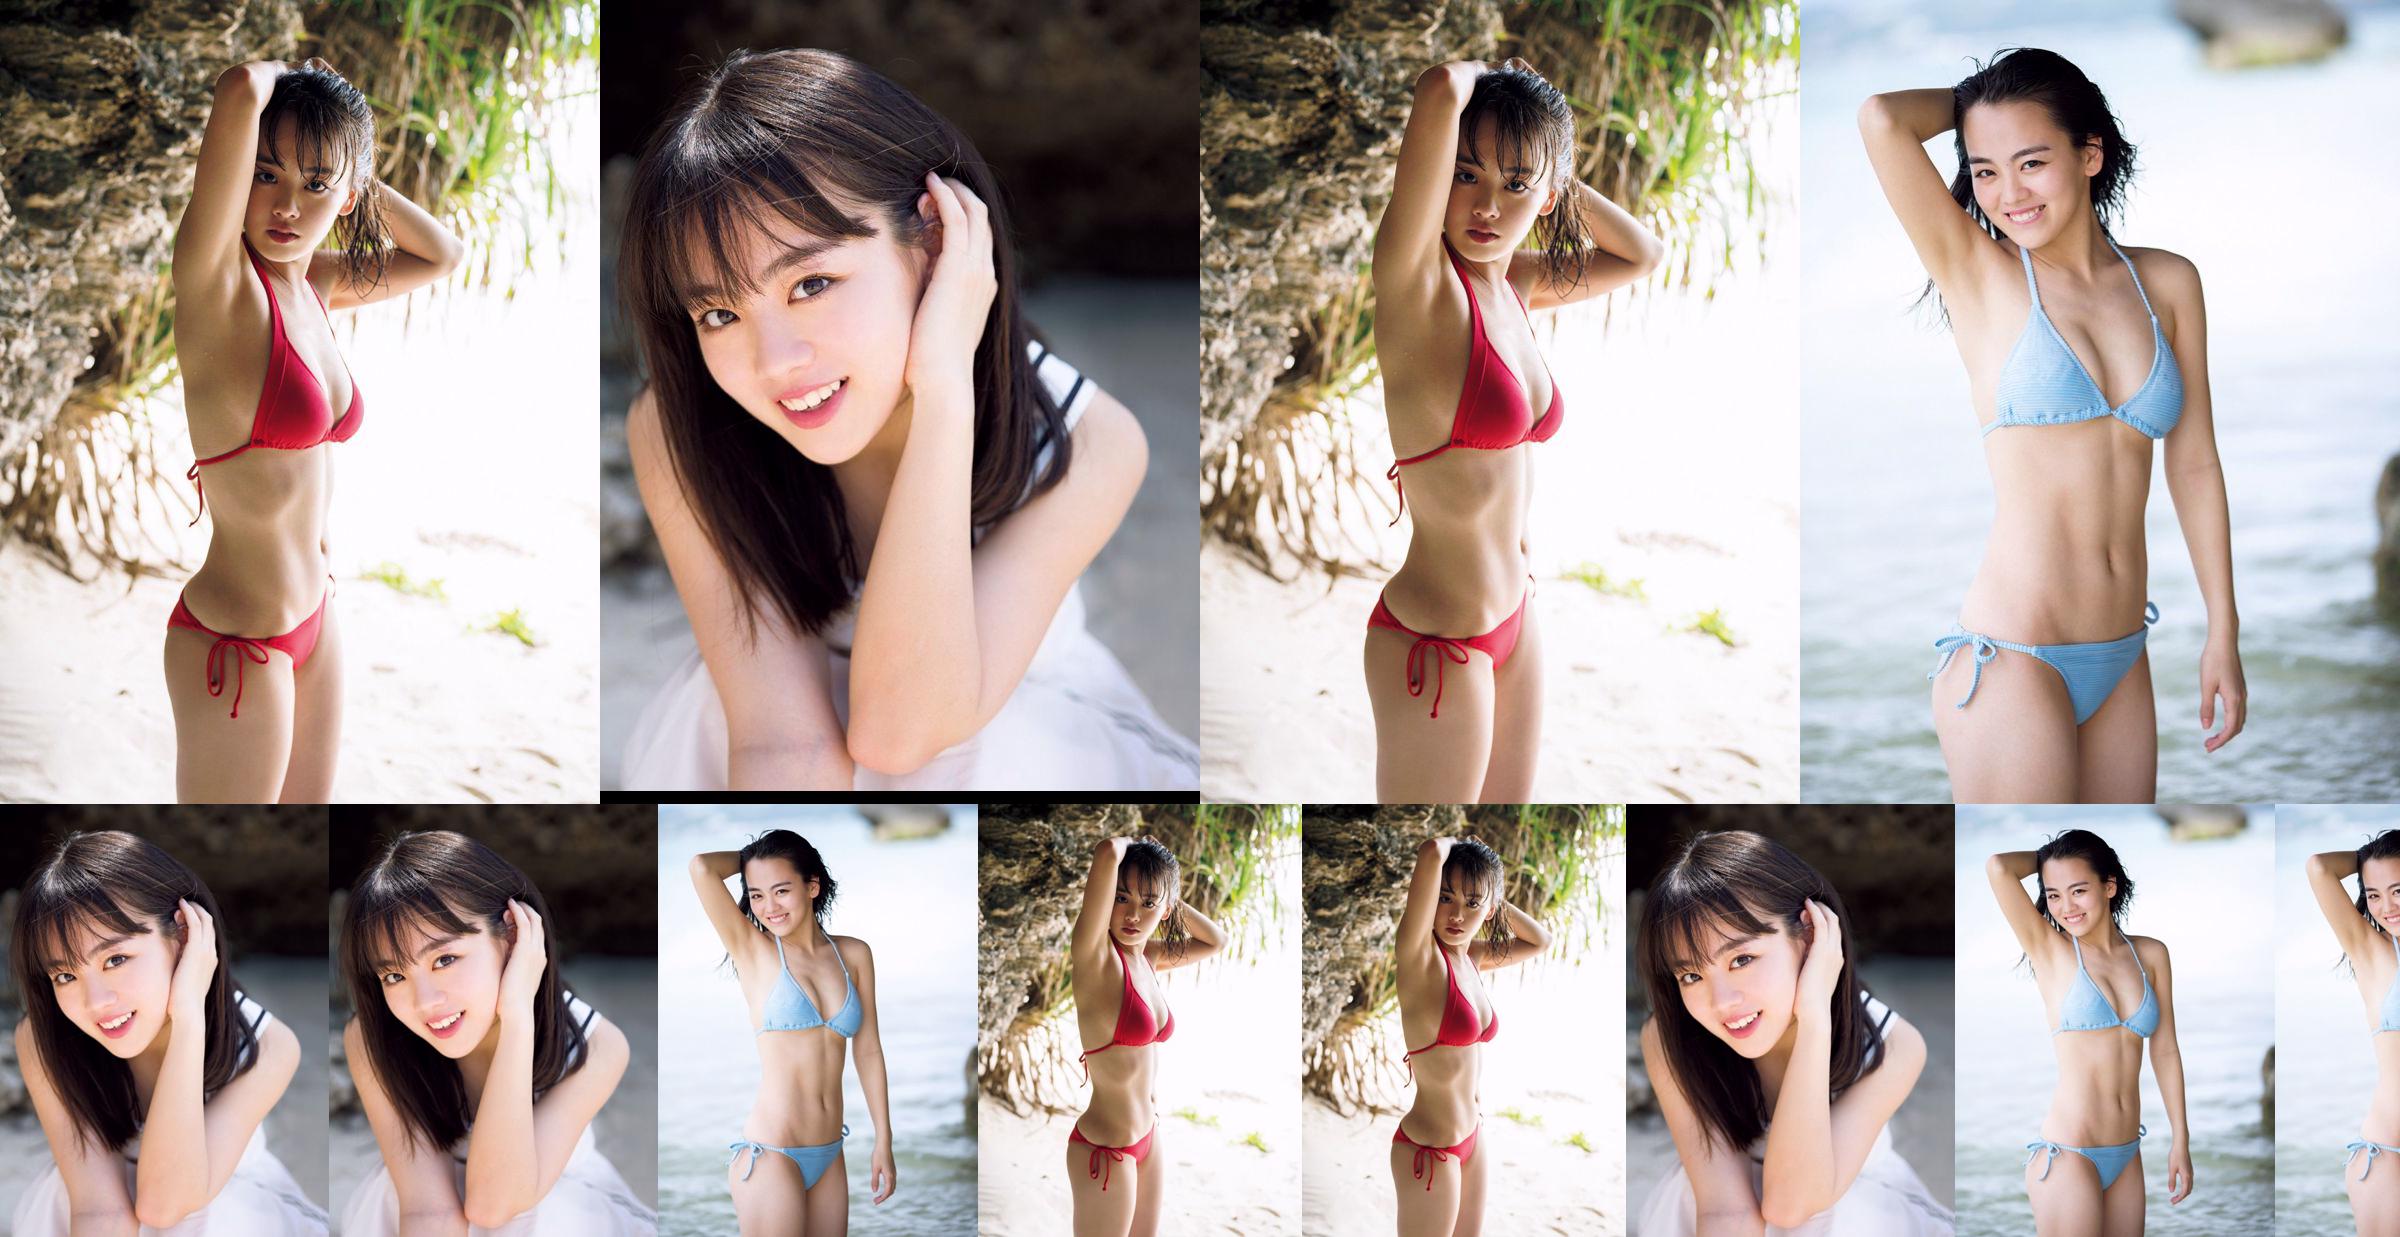 [วันศุกร์] Rikka Ihara << อดีตกัปตันชมรมเต้น Tomioka High School เปิดตัวในชุดบิกินี่ >> รูปภาพ No.7b5320 หน้า 1